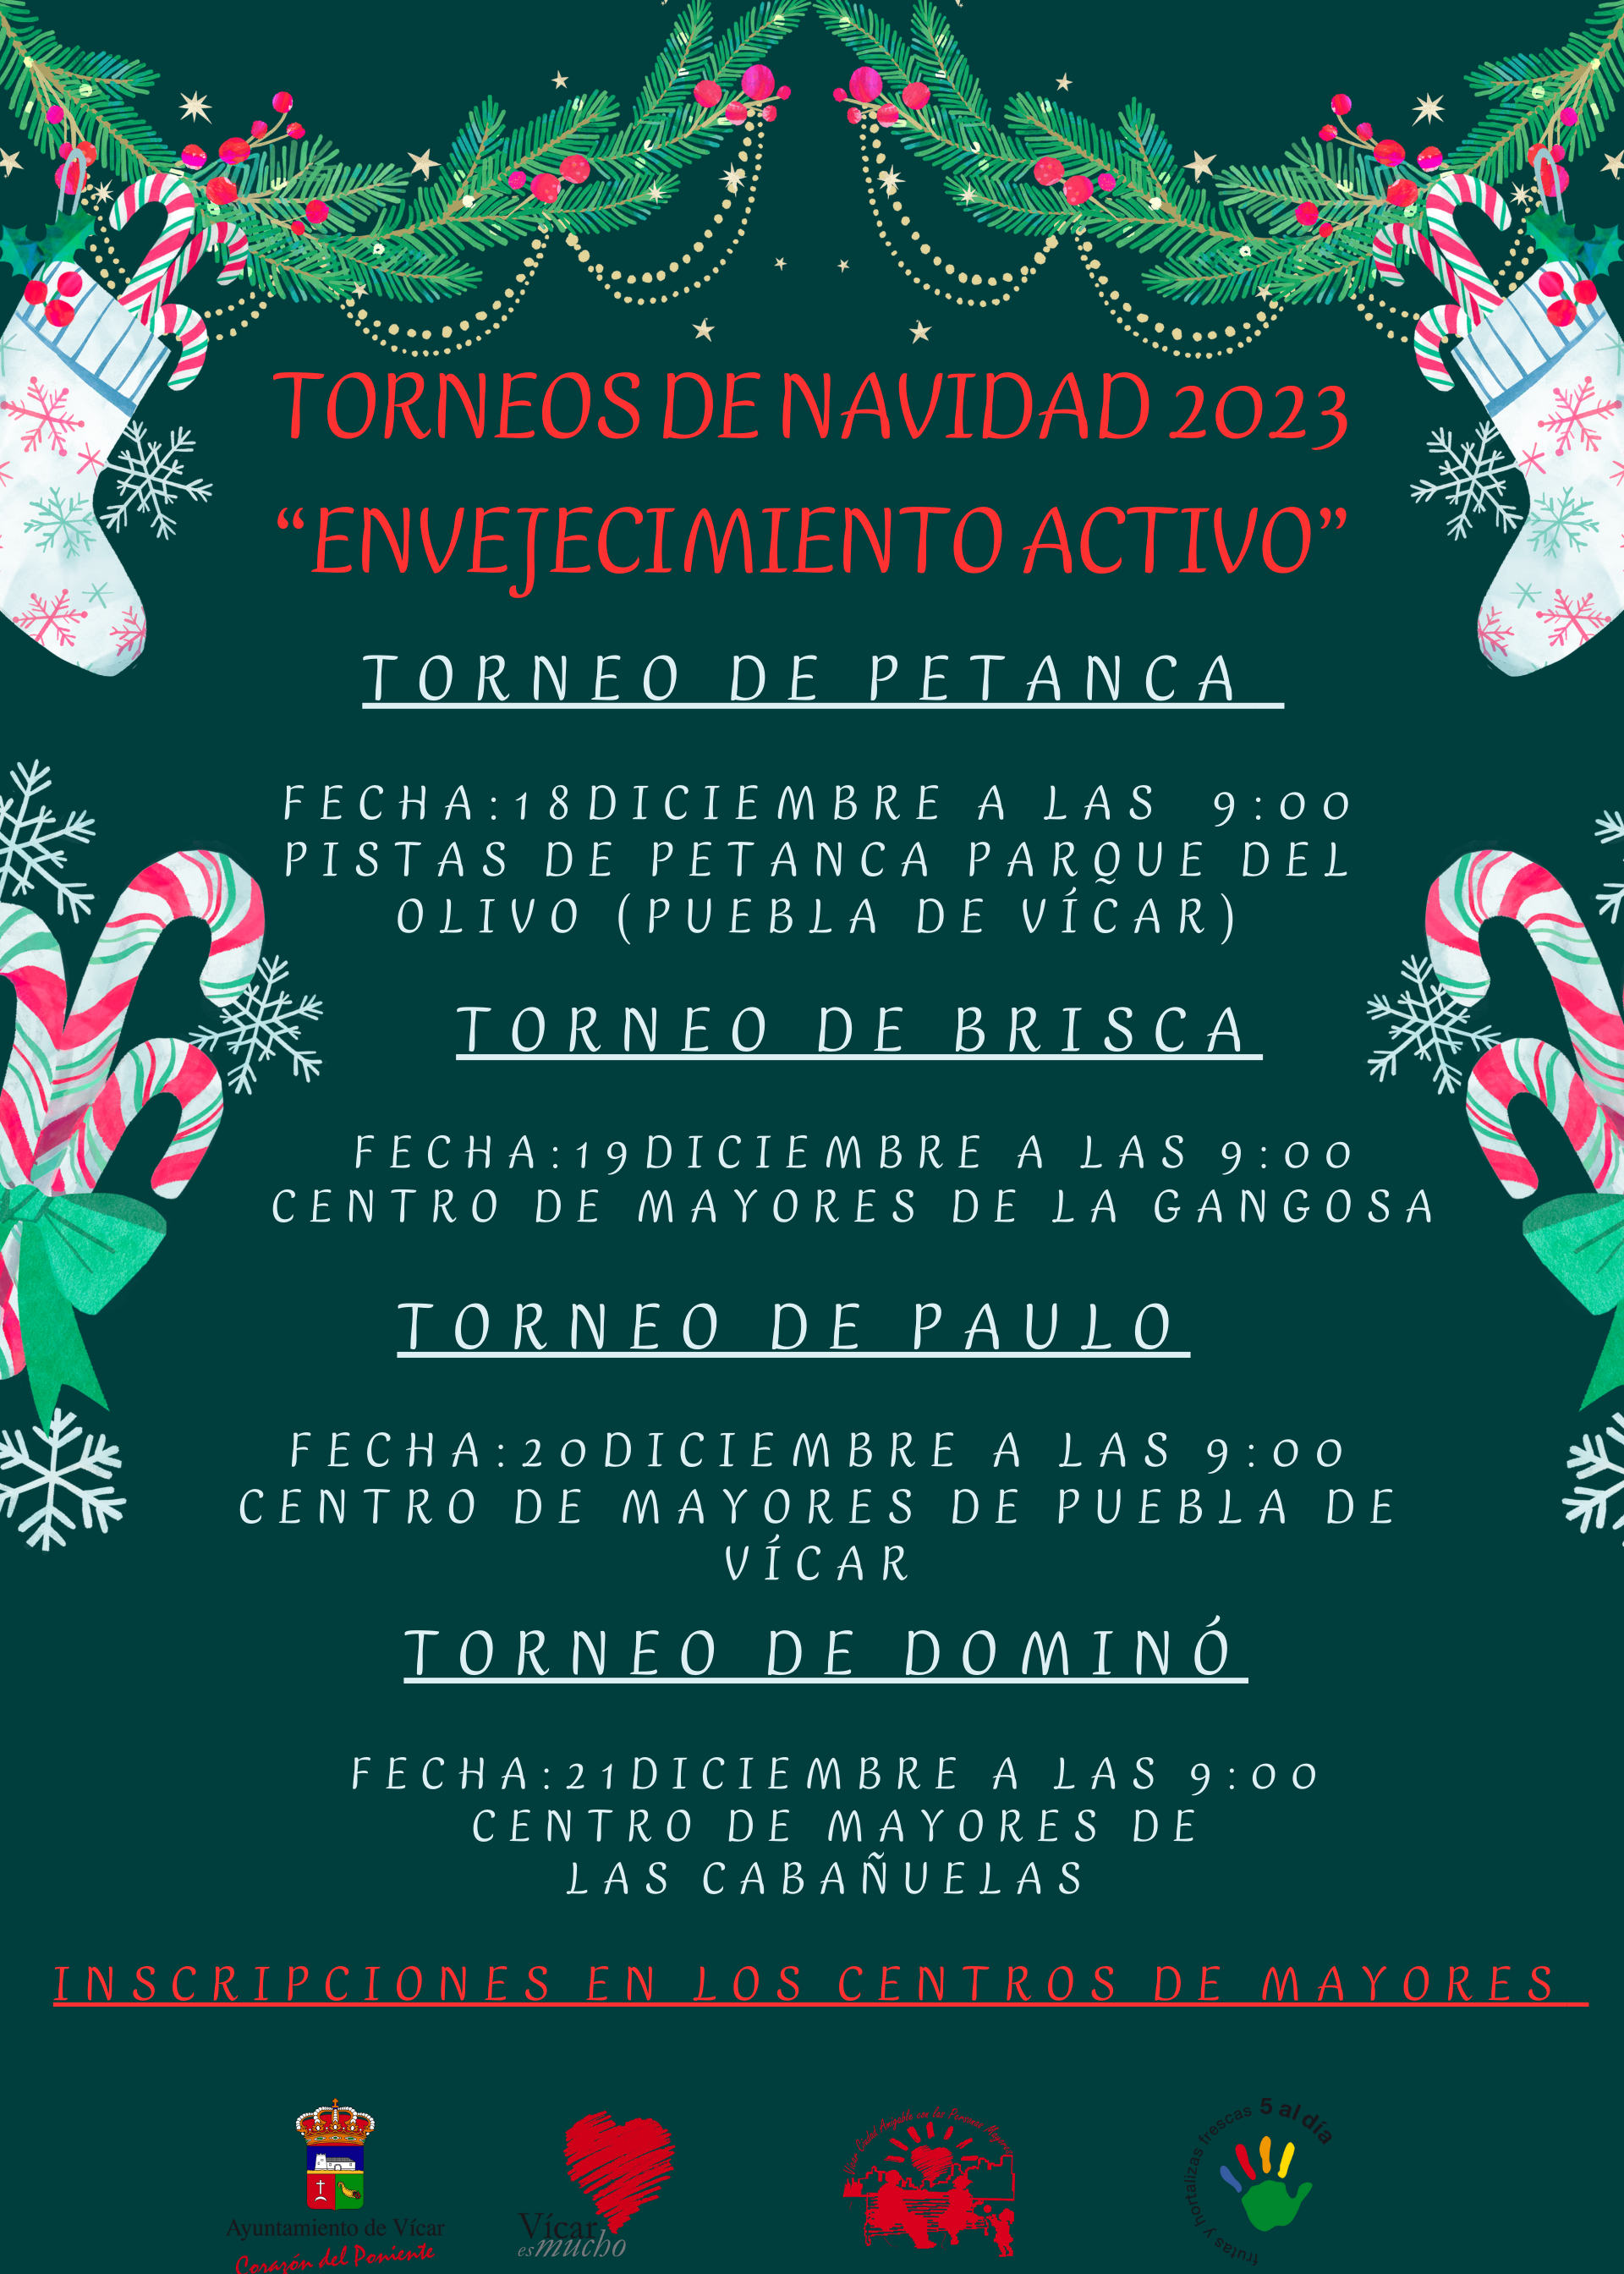 TORNEOS DE NAVIDAD 2023